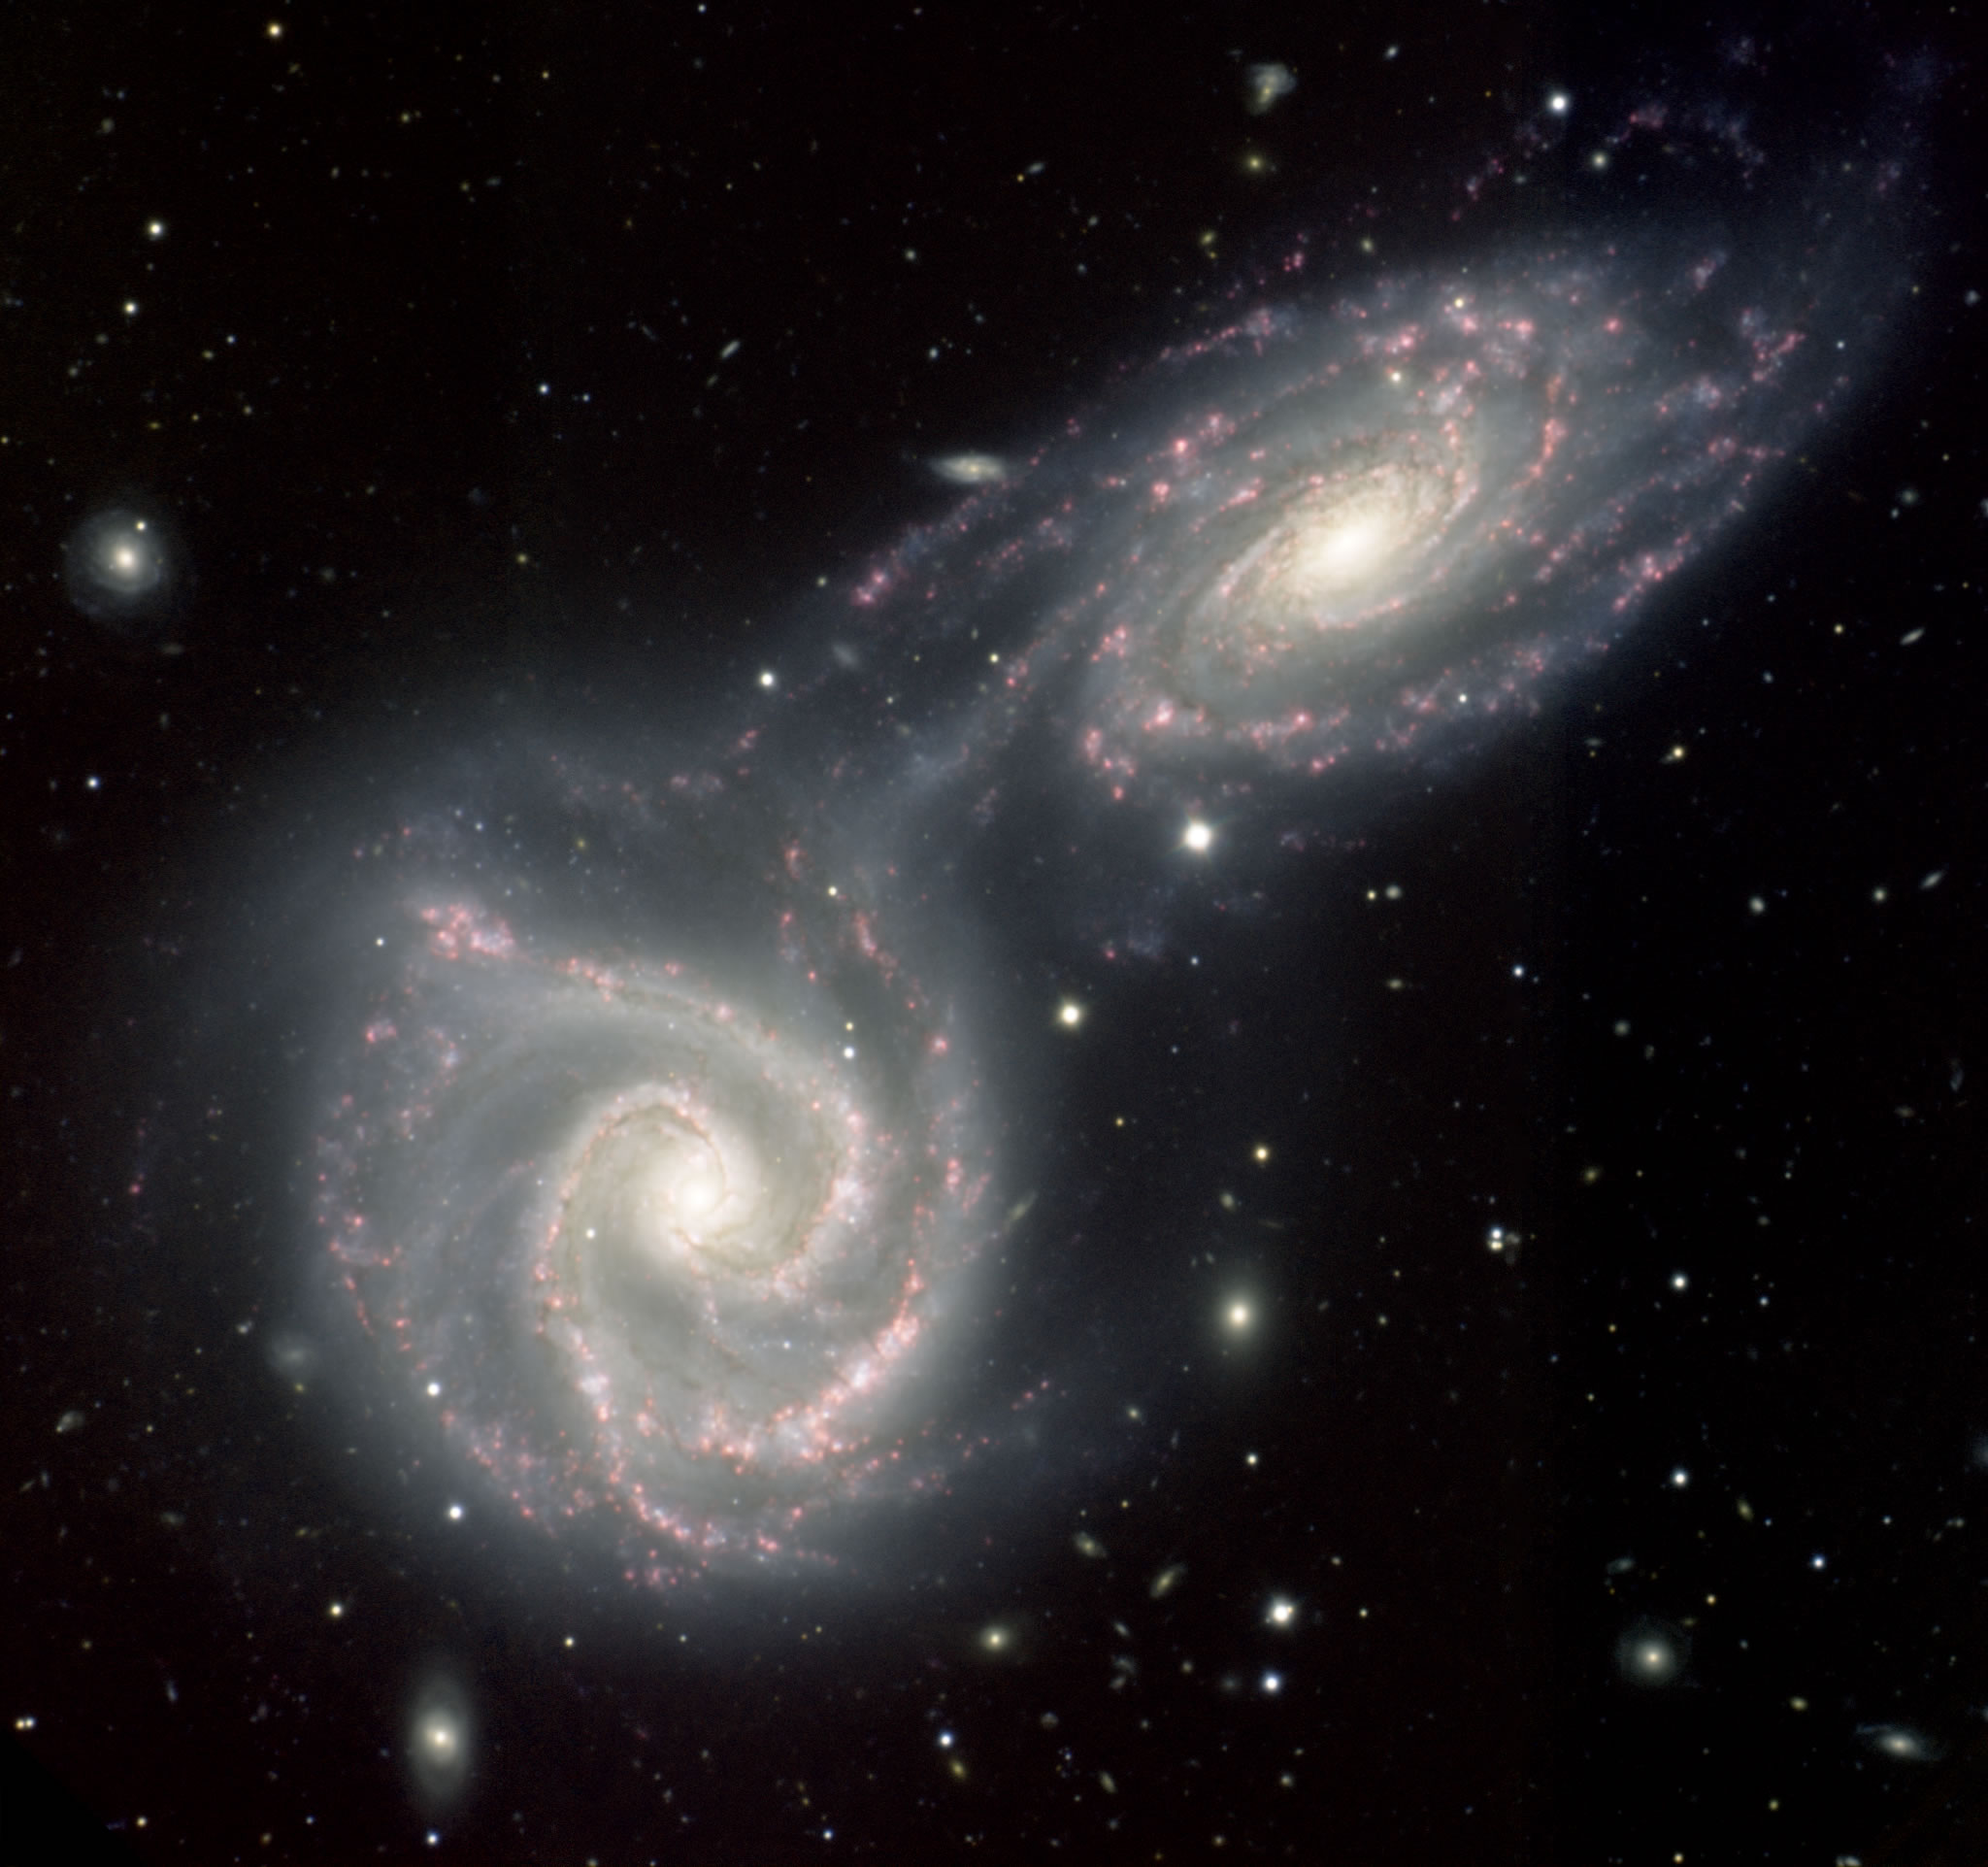 Stalkivayushiesya spiral'nye galaktiki Arp 271